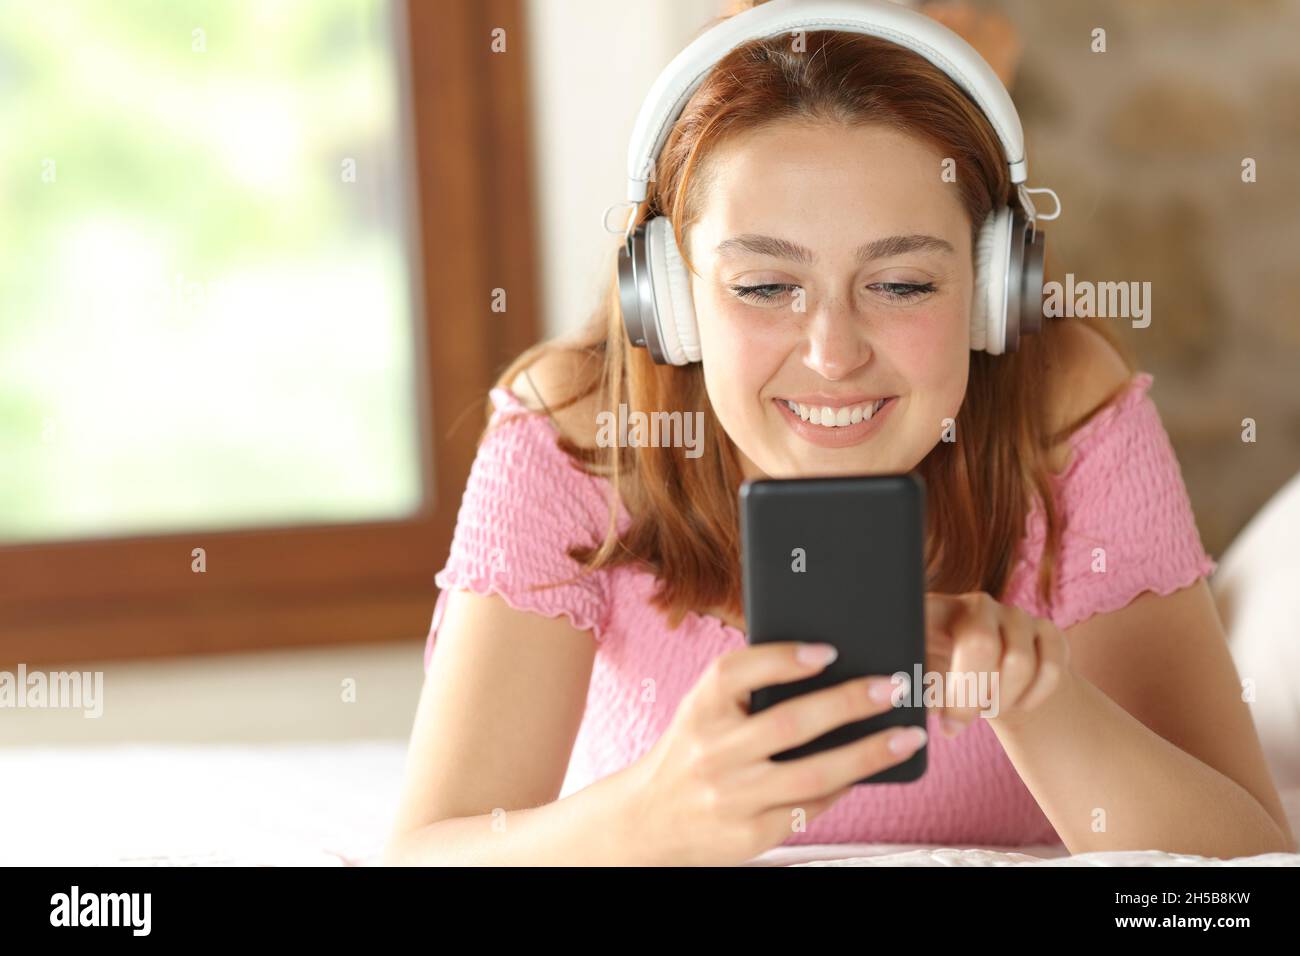 Vue avant portrait d'une femme heureuse écoutant de la musique sur la perle à la maison Banque D'Images